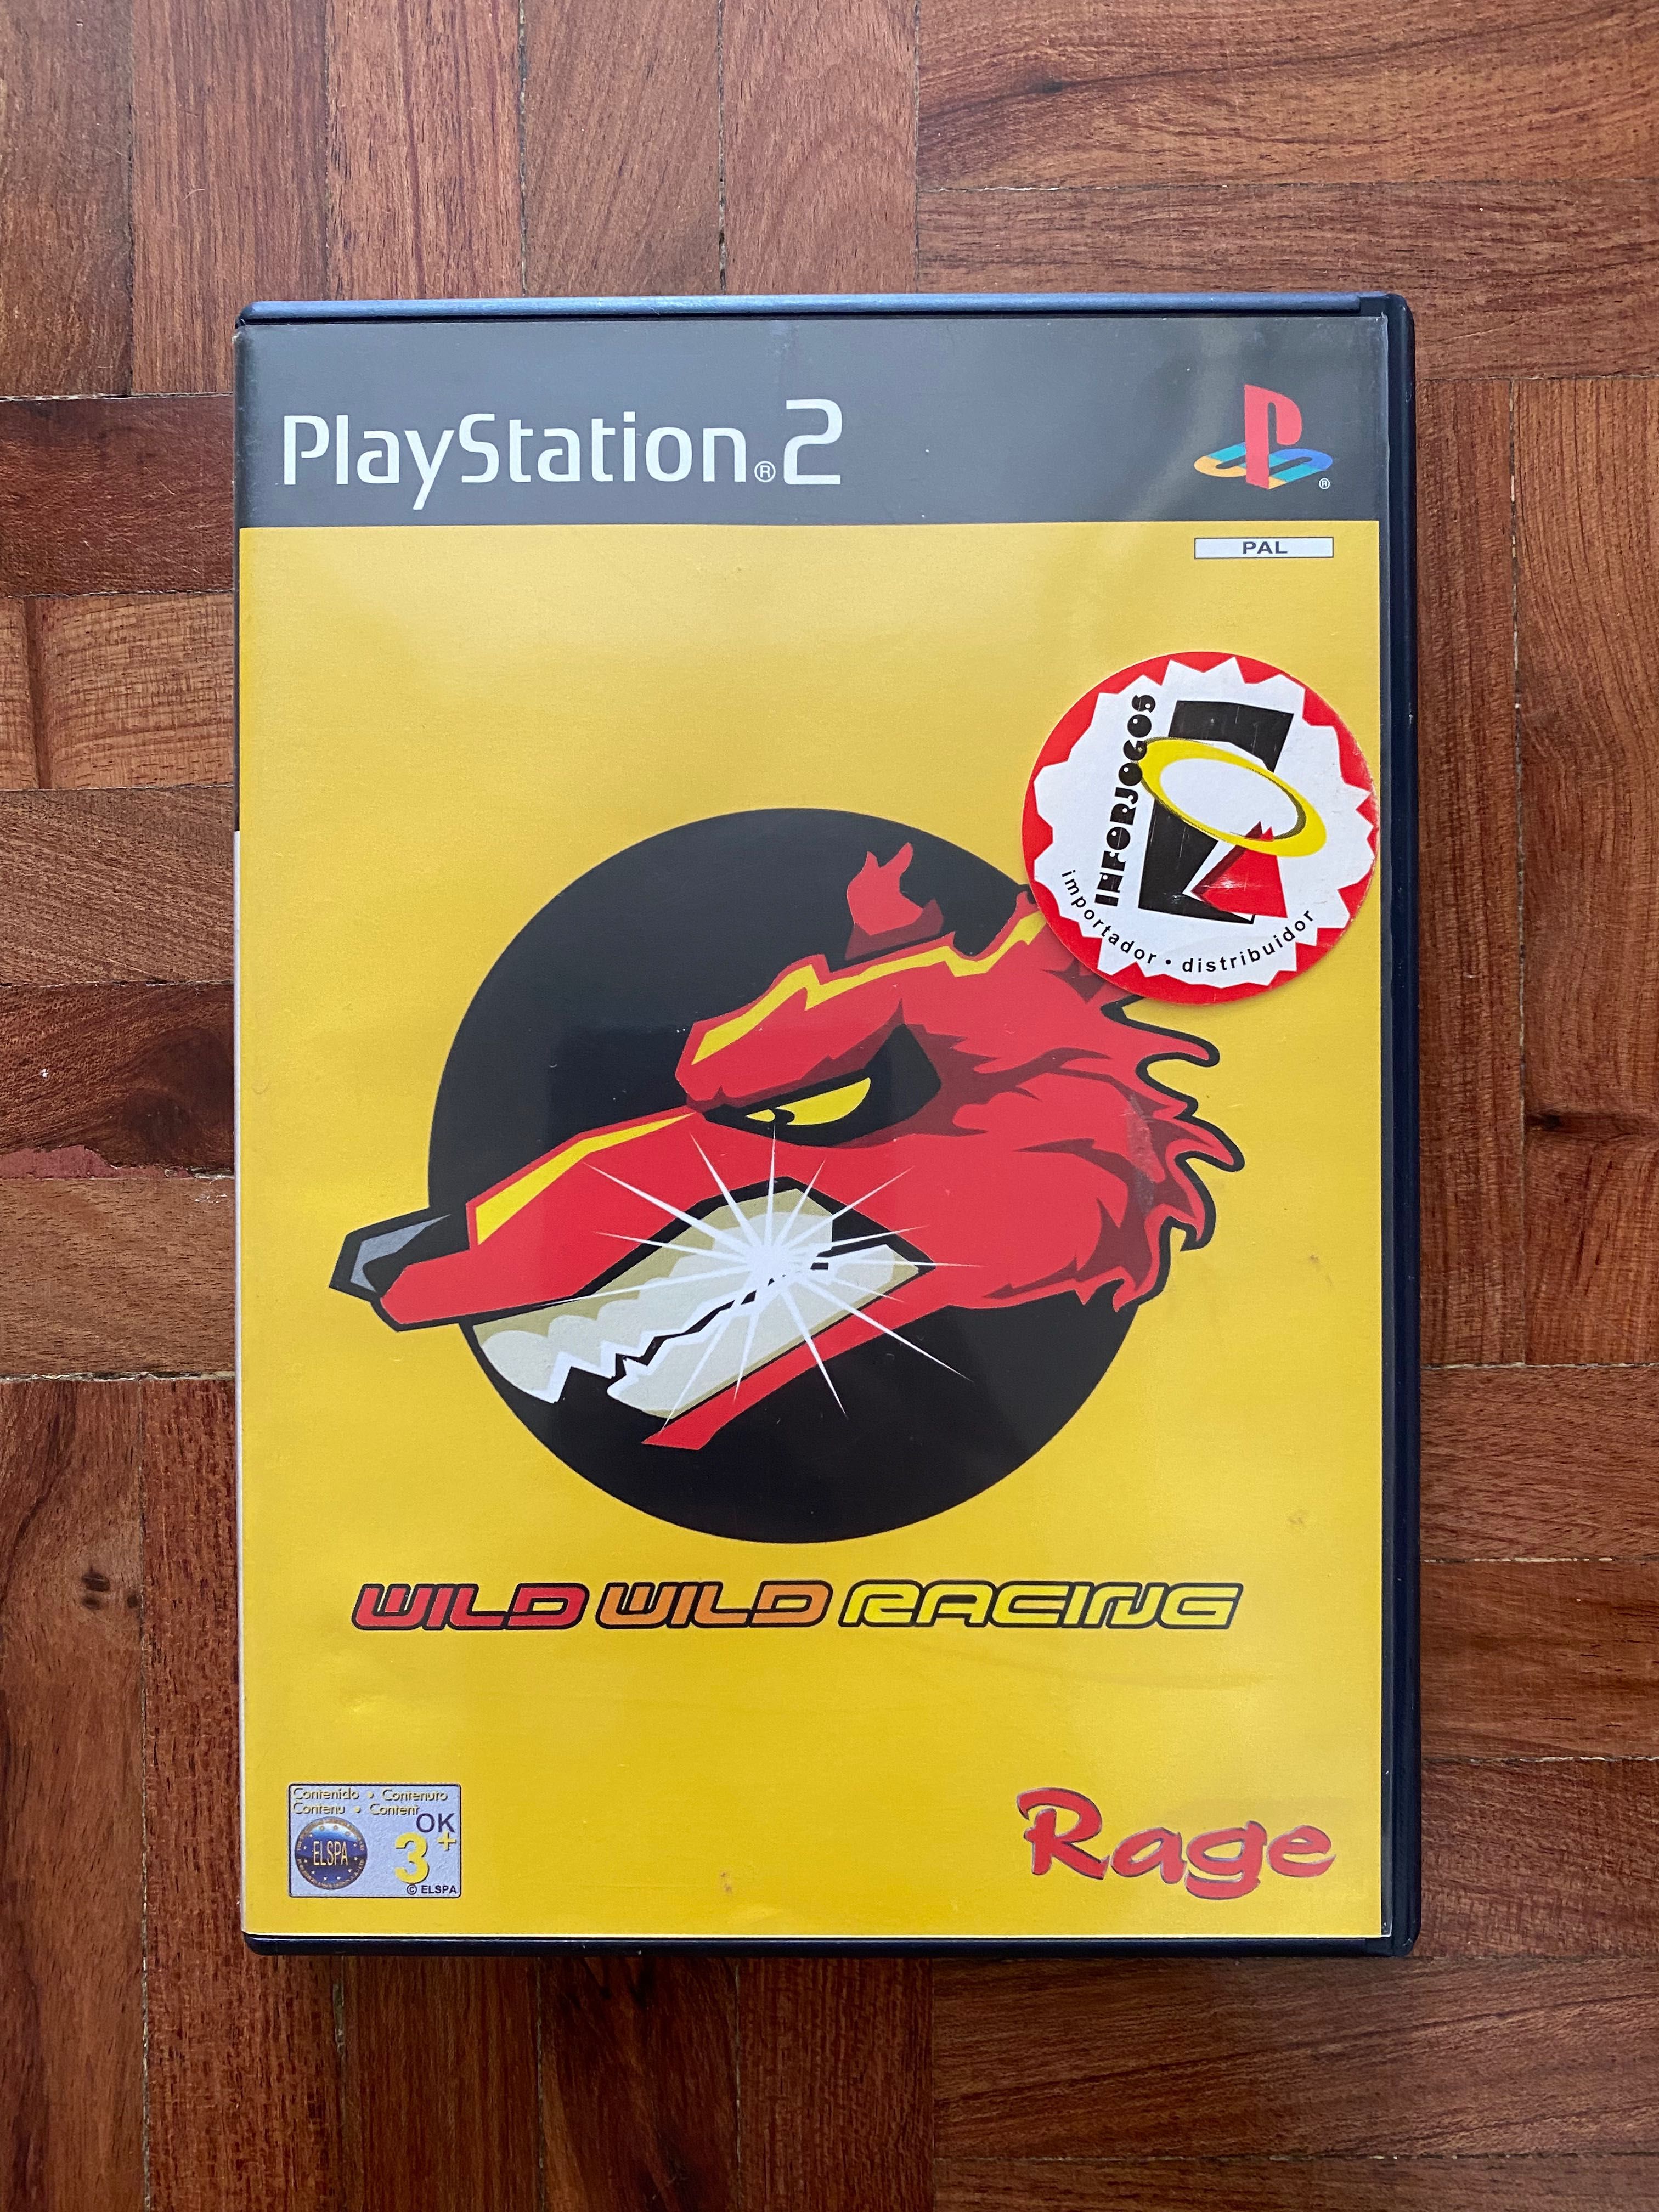 Jogo Wild Wild Racing para PS2